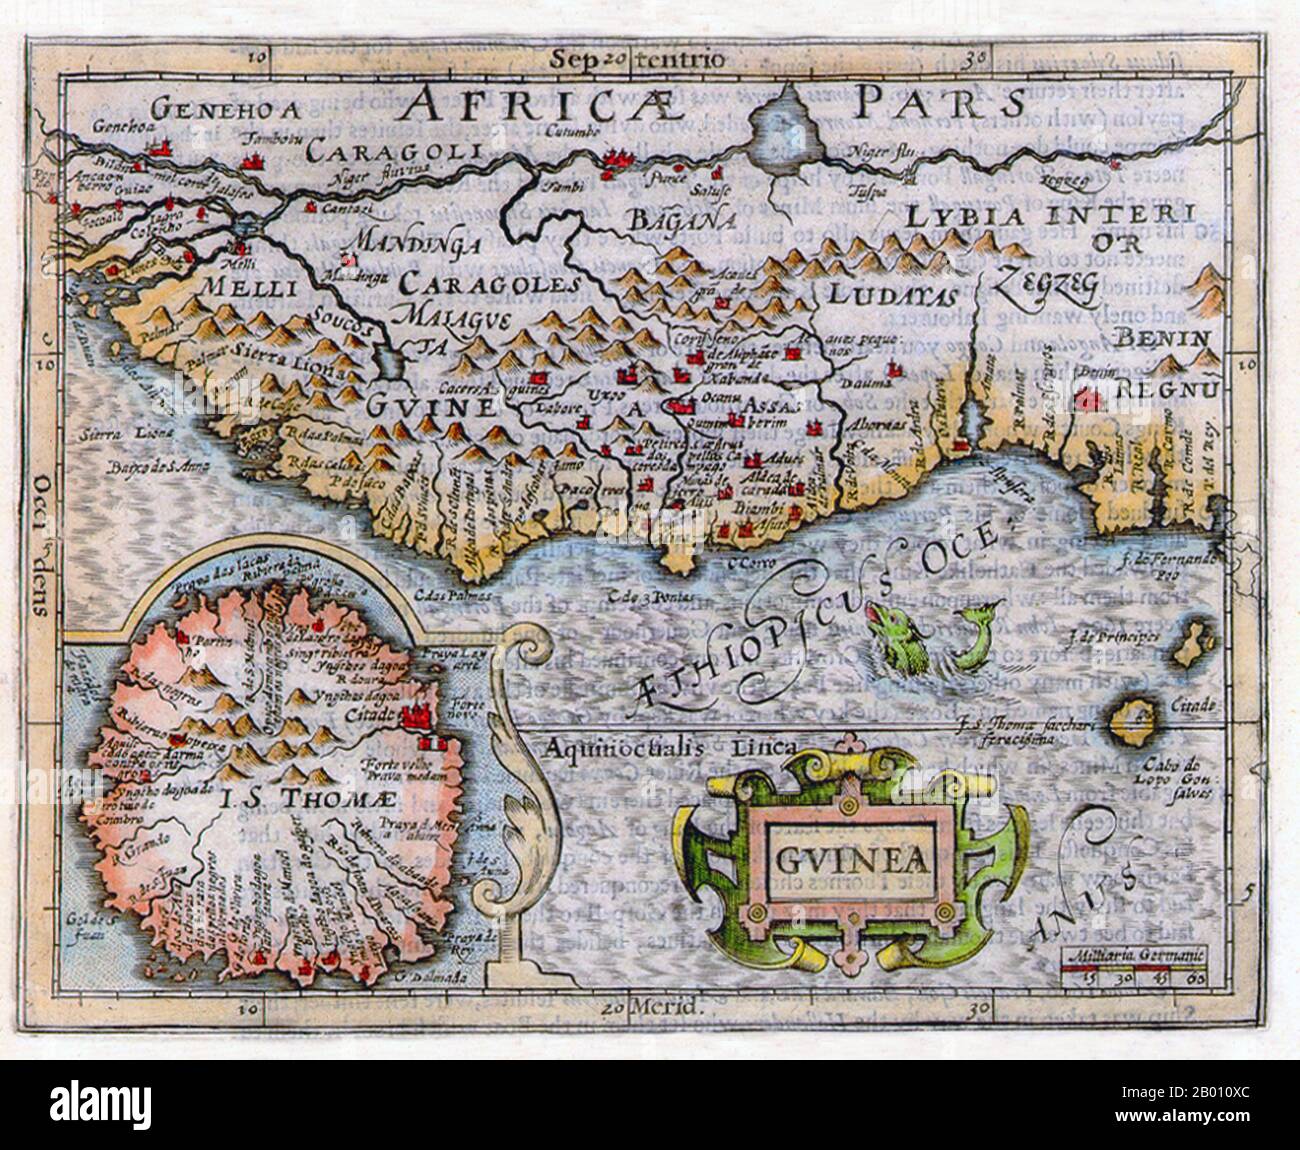 Afrique: Carte de la Guinée et des régions environnantes par Jodocus Hondeus (1563-1612), 1625. Le Royaume du Bénin, le Bénin Regnu, est indiqué dans le sud-est. Banque D'Images